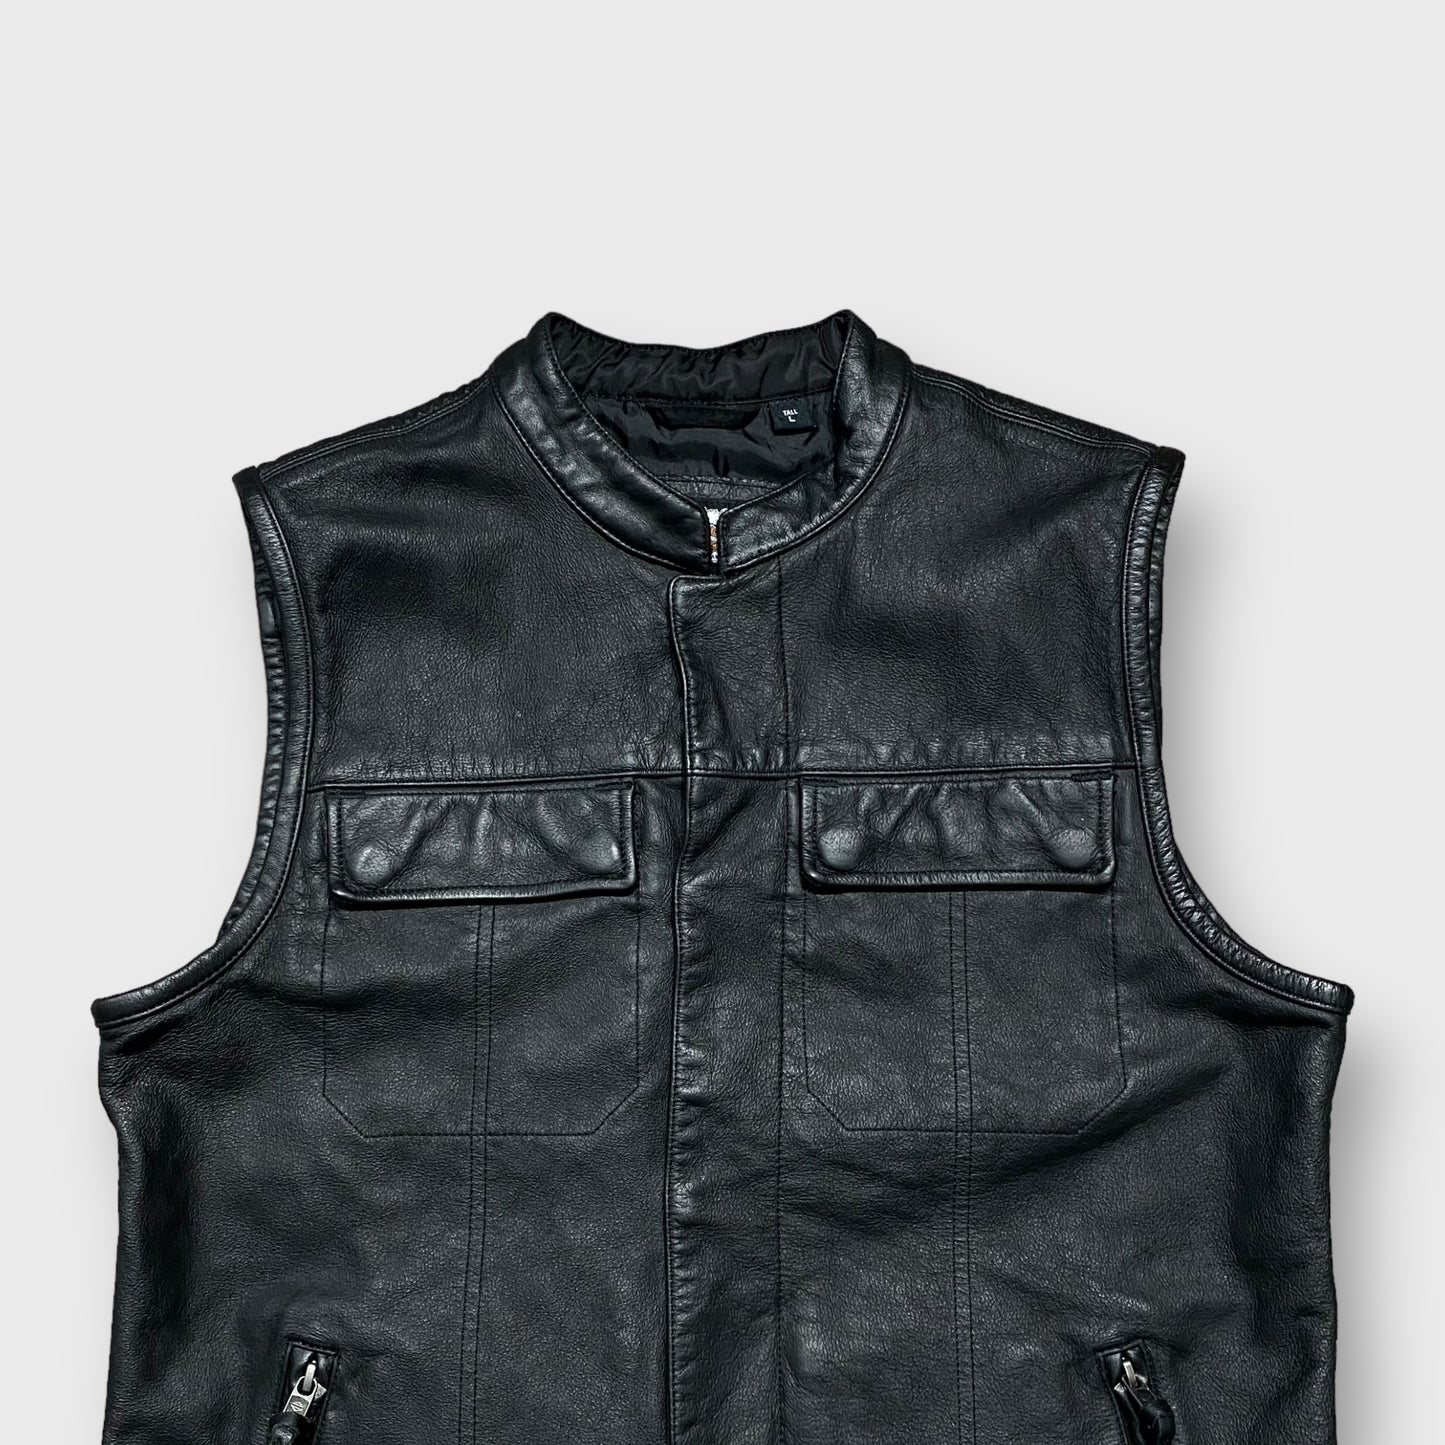 00's "Harley-Davidson" Lethear vest